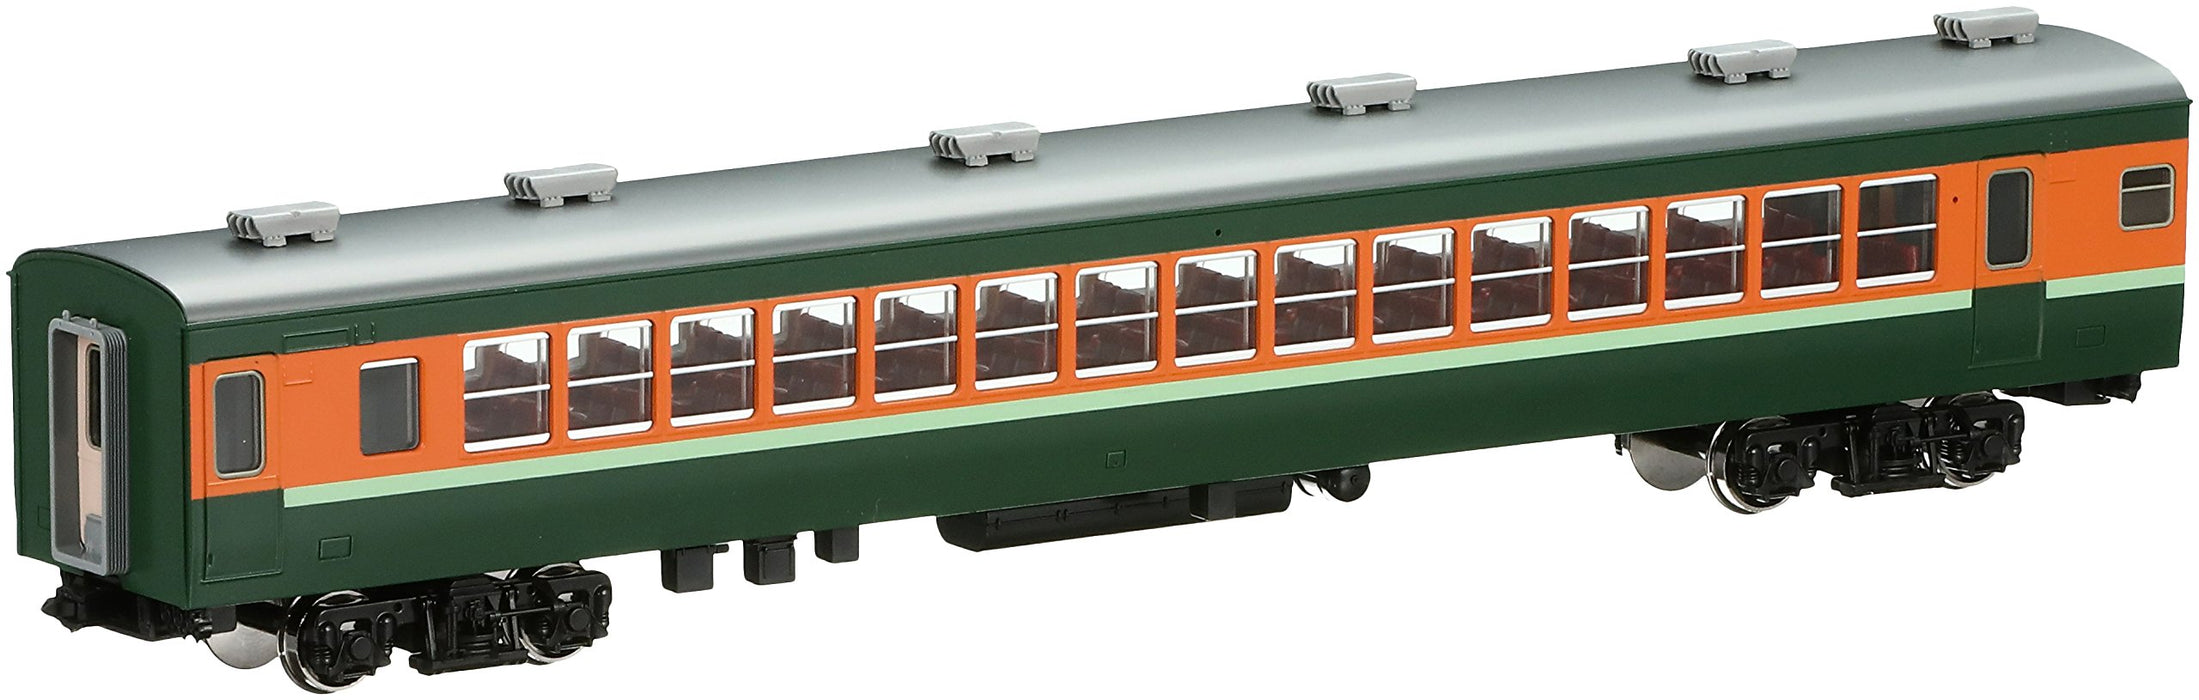 Tomytec Tomix HO jauge ceinture verte Salo 153 HO-298 modèle de Train ferroviaire